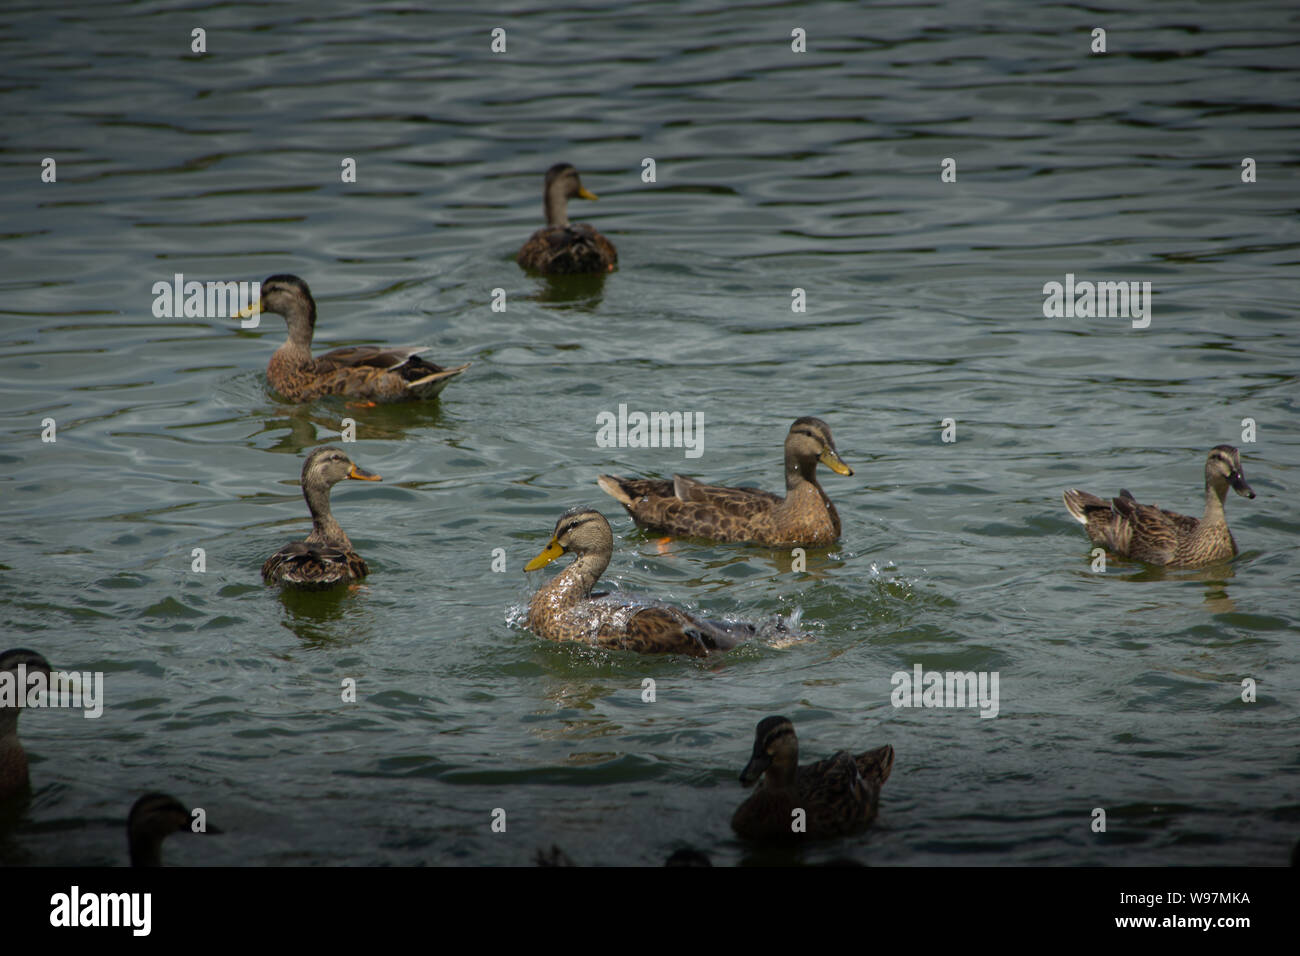 Gruppo di anatre nuotare intorno. Un anatra è schizzi in acqua mentre è in corso la ricerca di cibo. Foto Stock